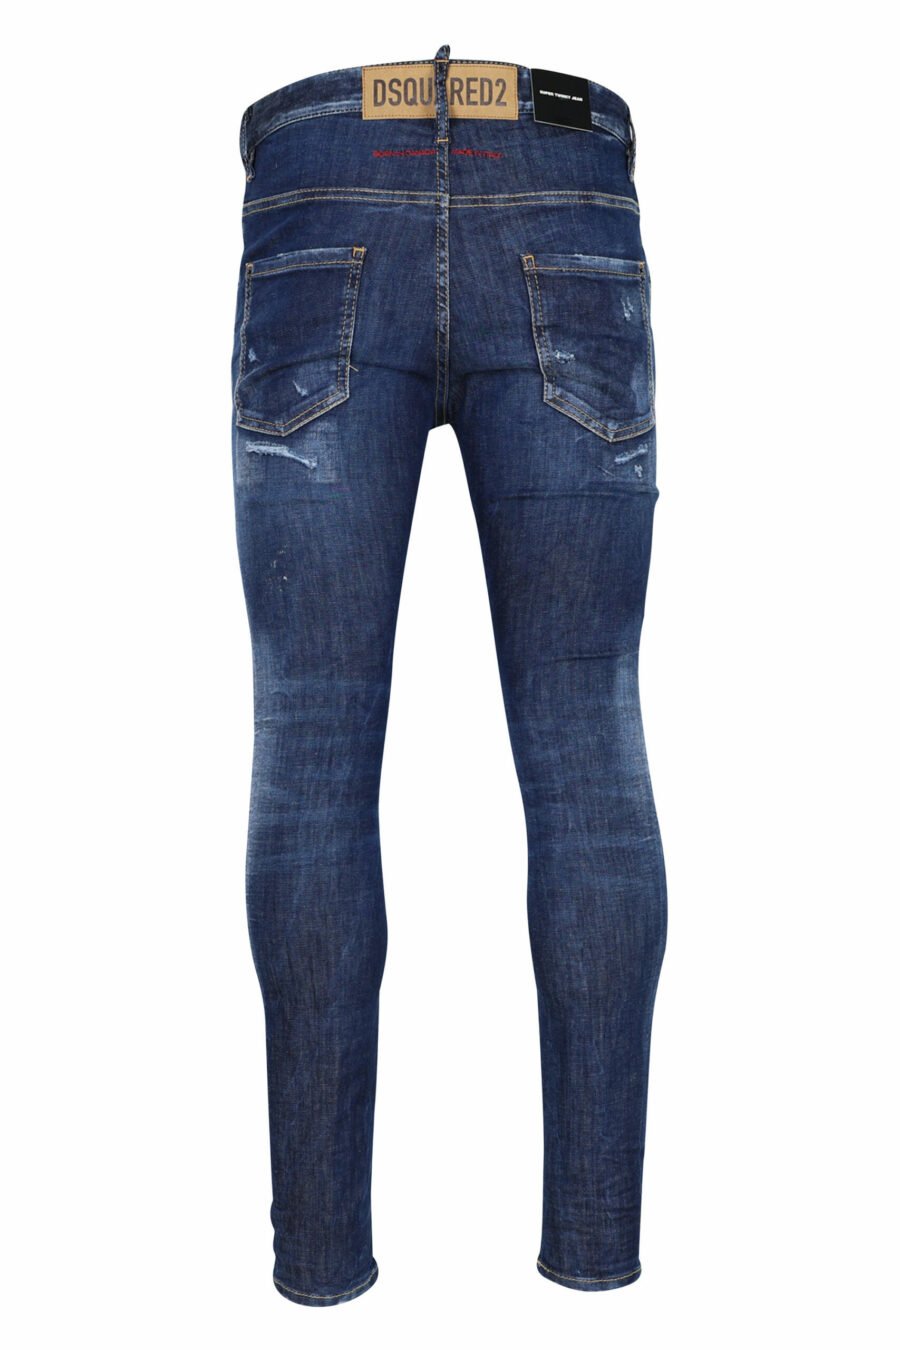 Jean bleu "super twinky jean" avec déchirures et effilochage - 8054148106201 2 échelles